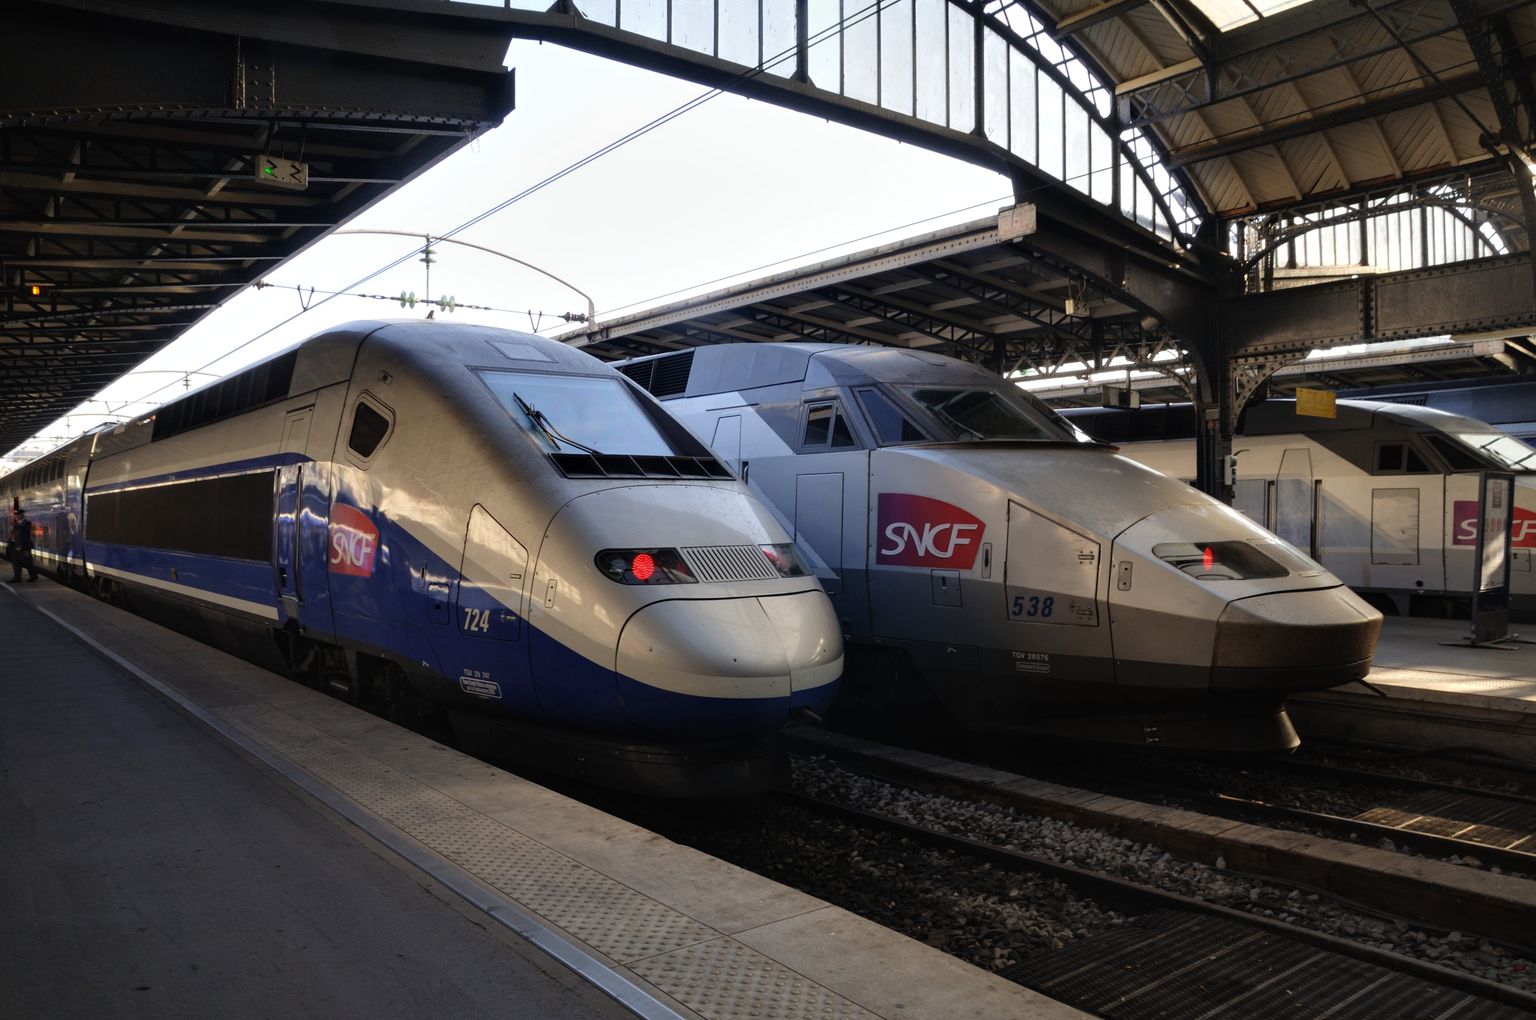 TGV kiirrongid Pariisi rongijaamas